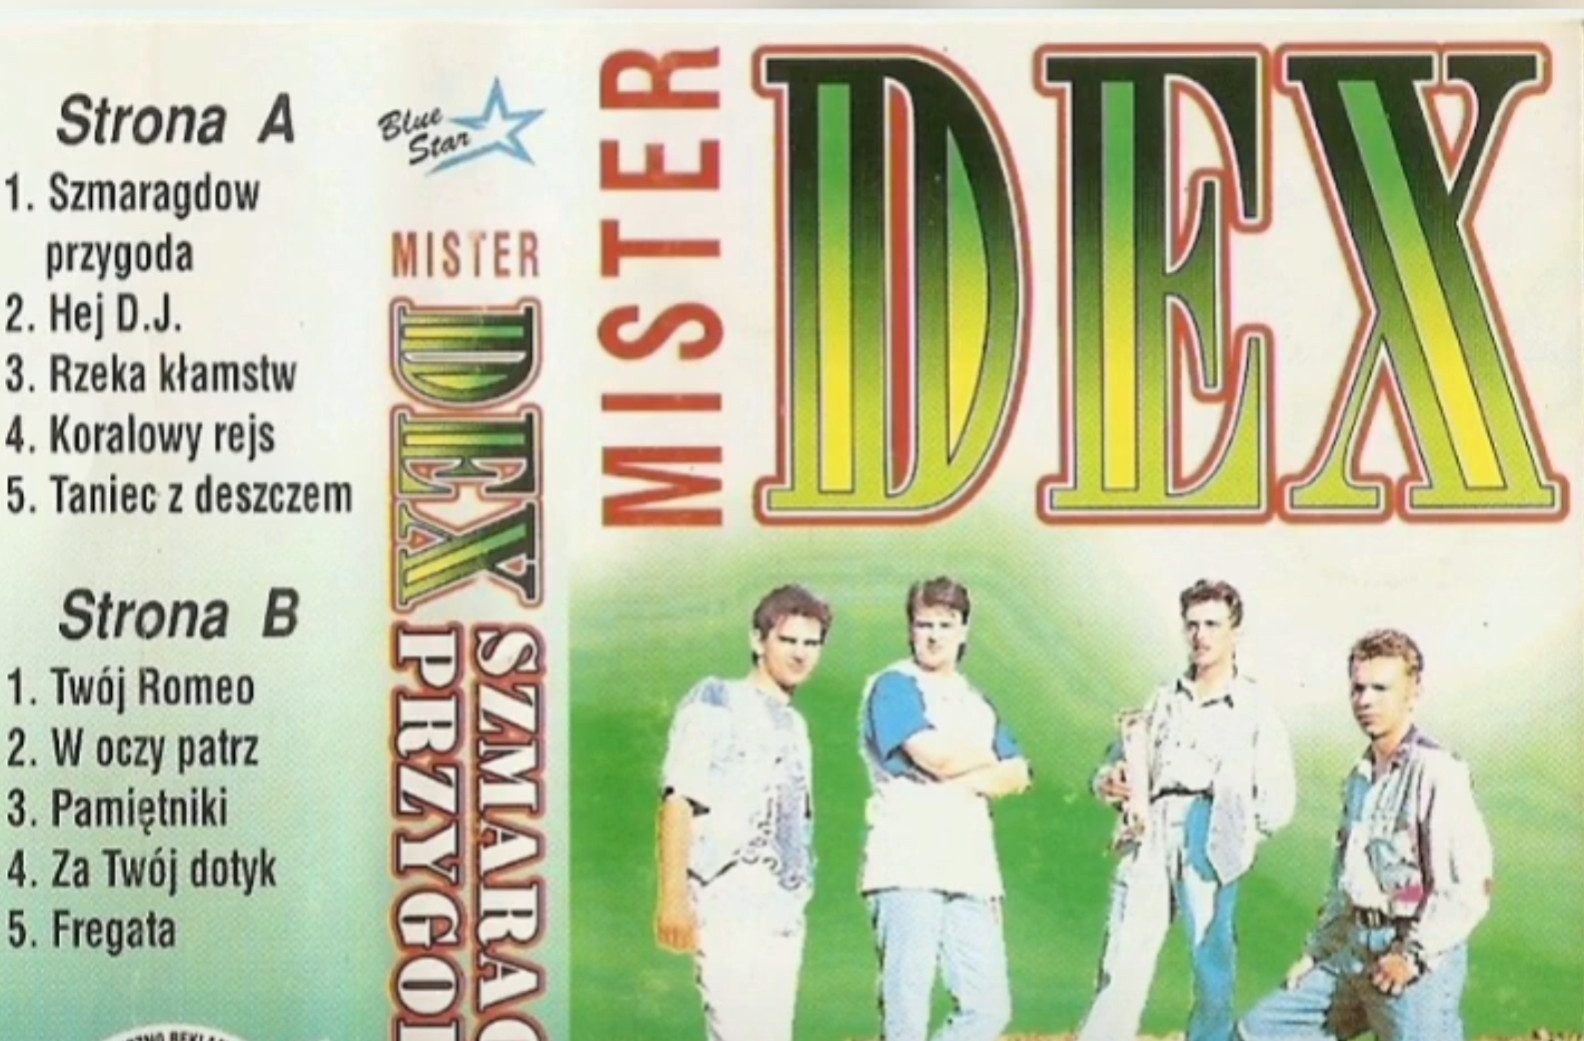 Wielka gratka dla miłośników lat .90! Do sieci trafił wyjątkowy krążek znanego zespołu - Mister Dex